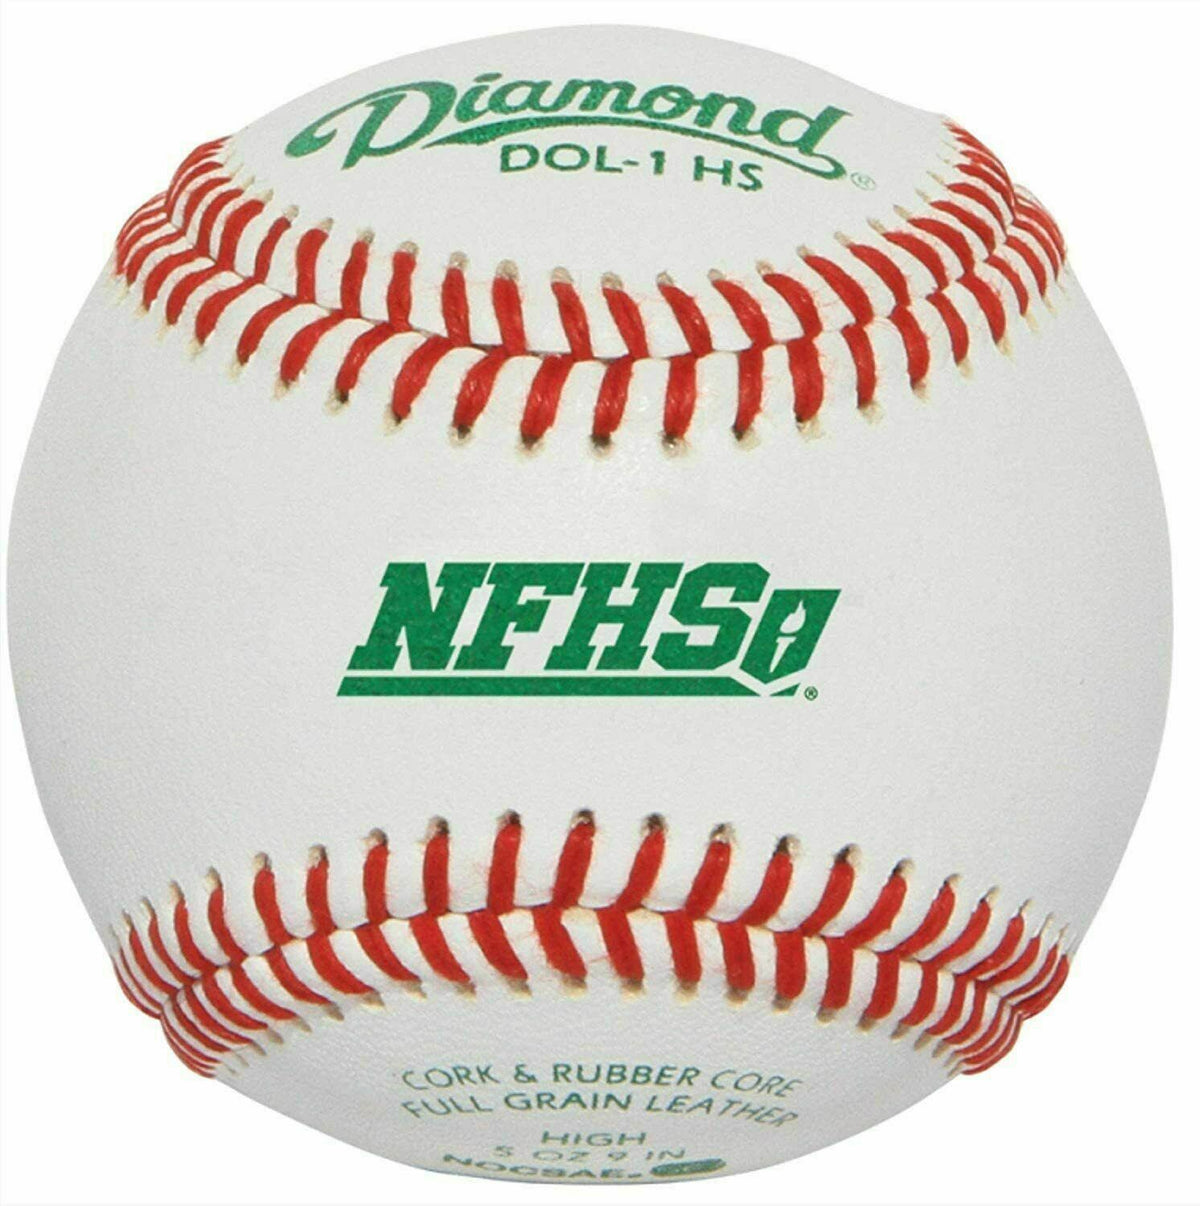 Diamantsport | DOL-1 HS | NFHS NOCSA Offizielle Liga-Baseballs | 1 Dutzend Bälle